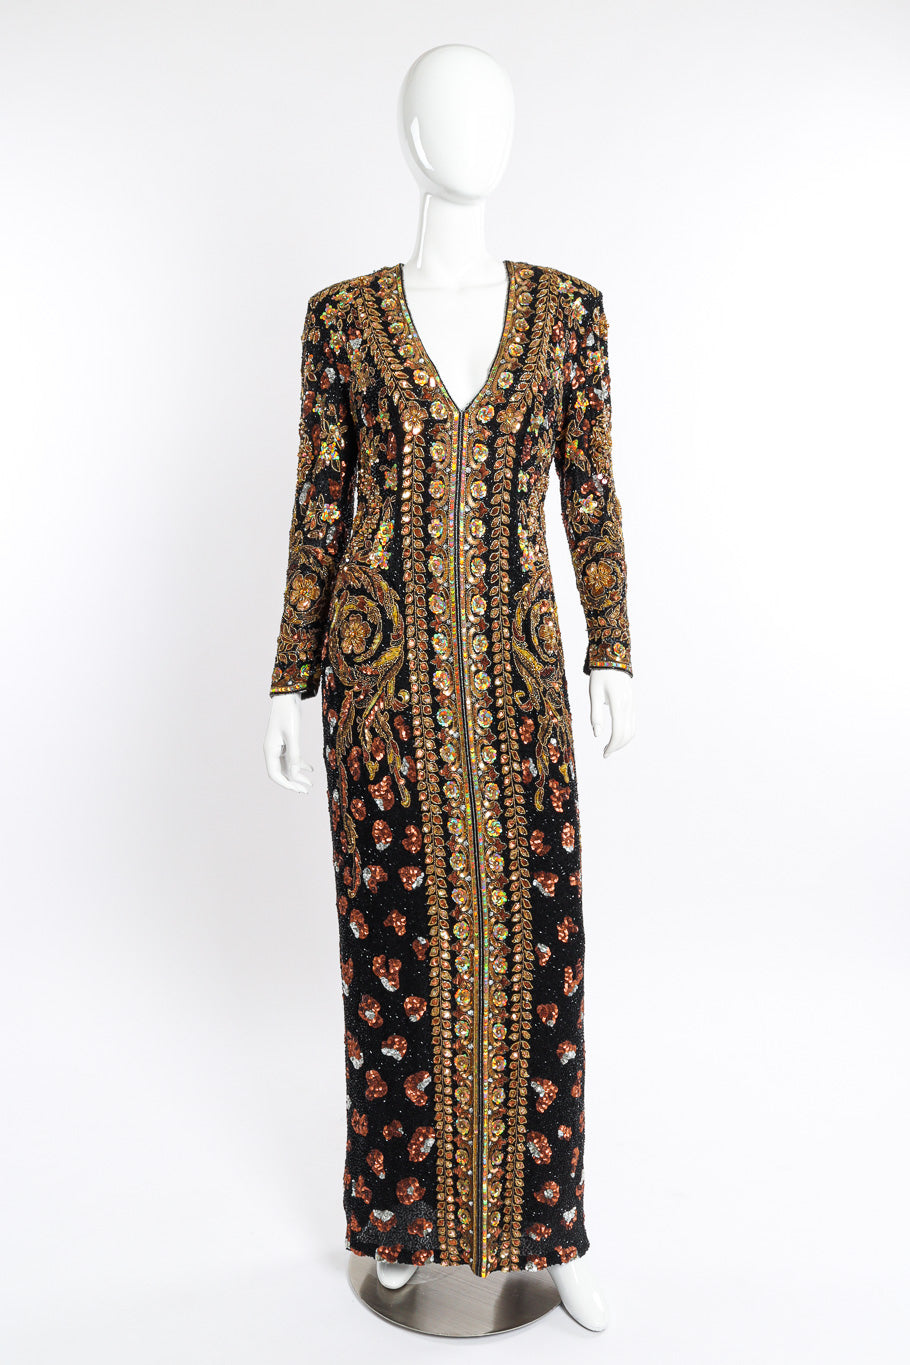 Vintage Naeem Khan Beaded Floral Brocade Gown front on mannequin @recessla